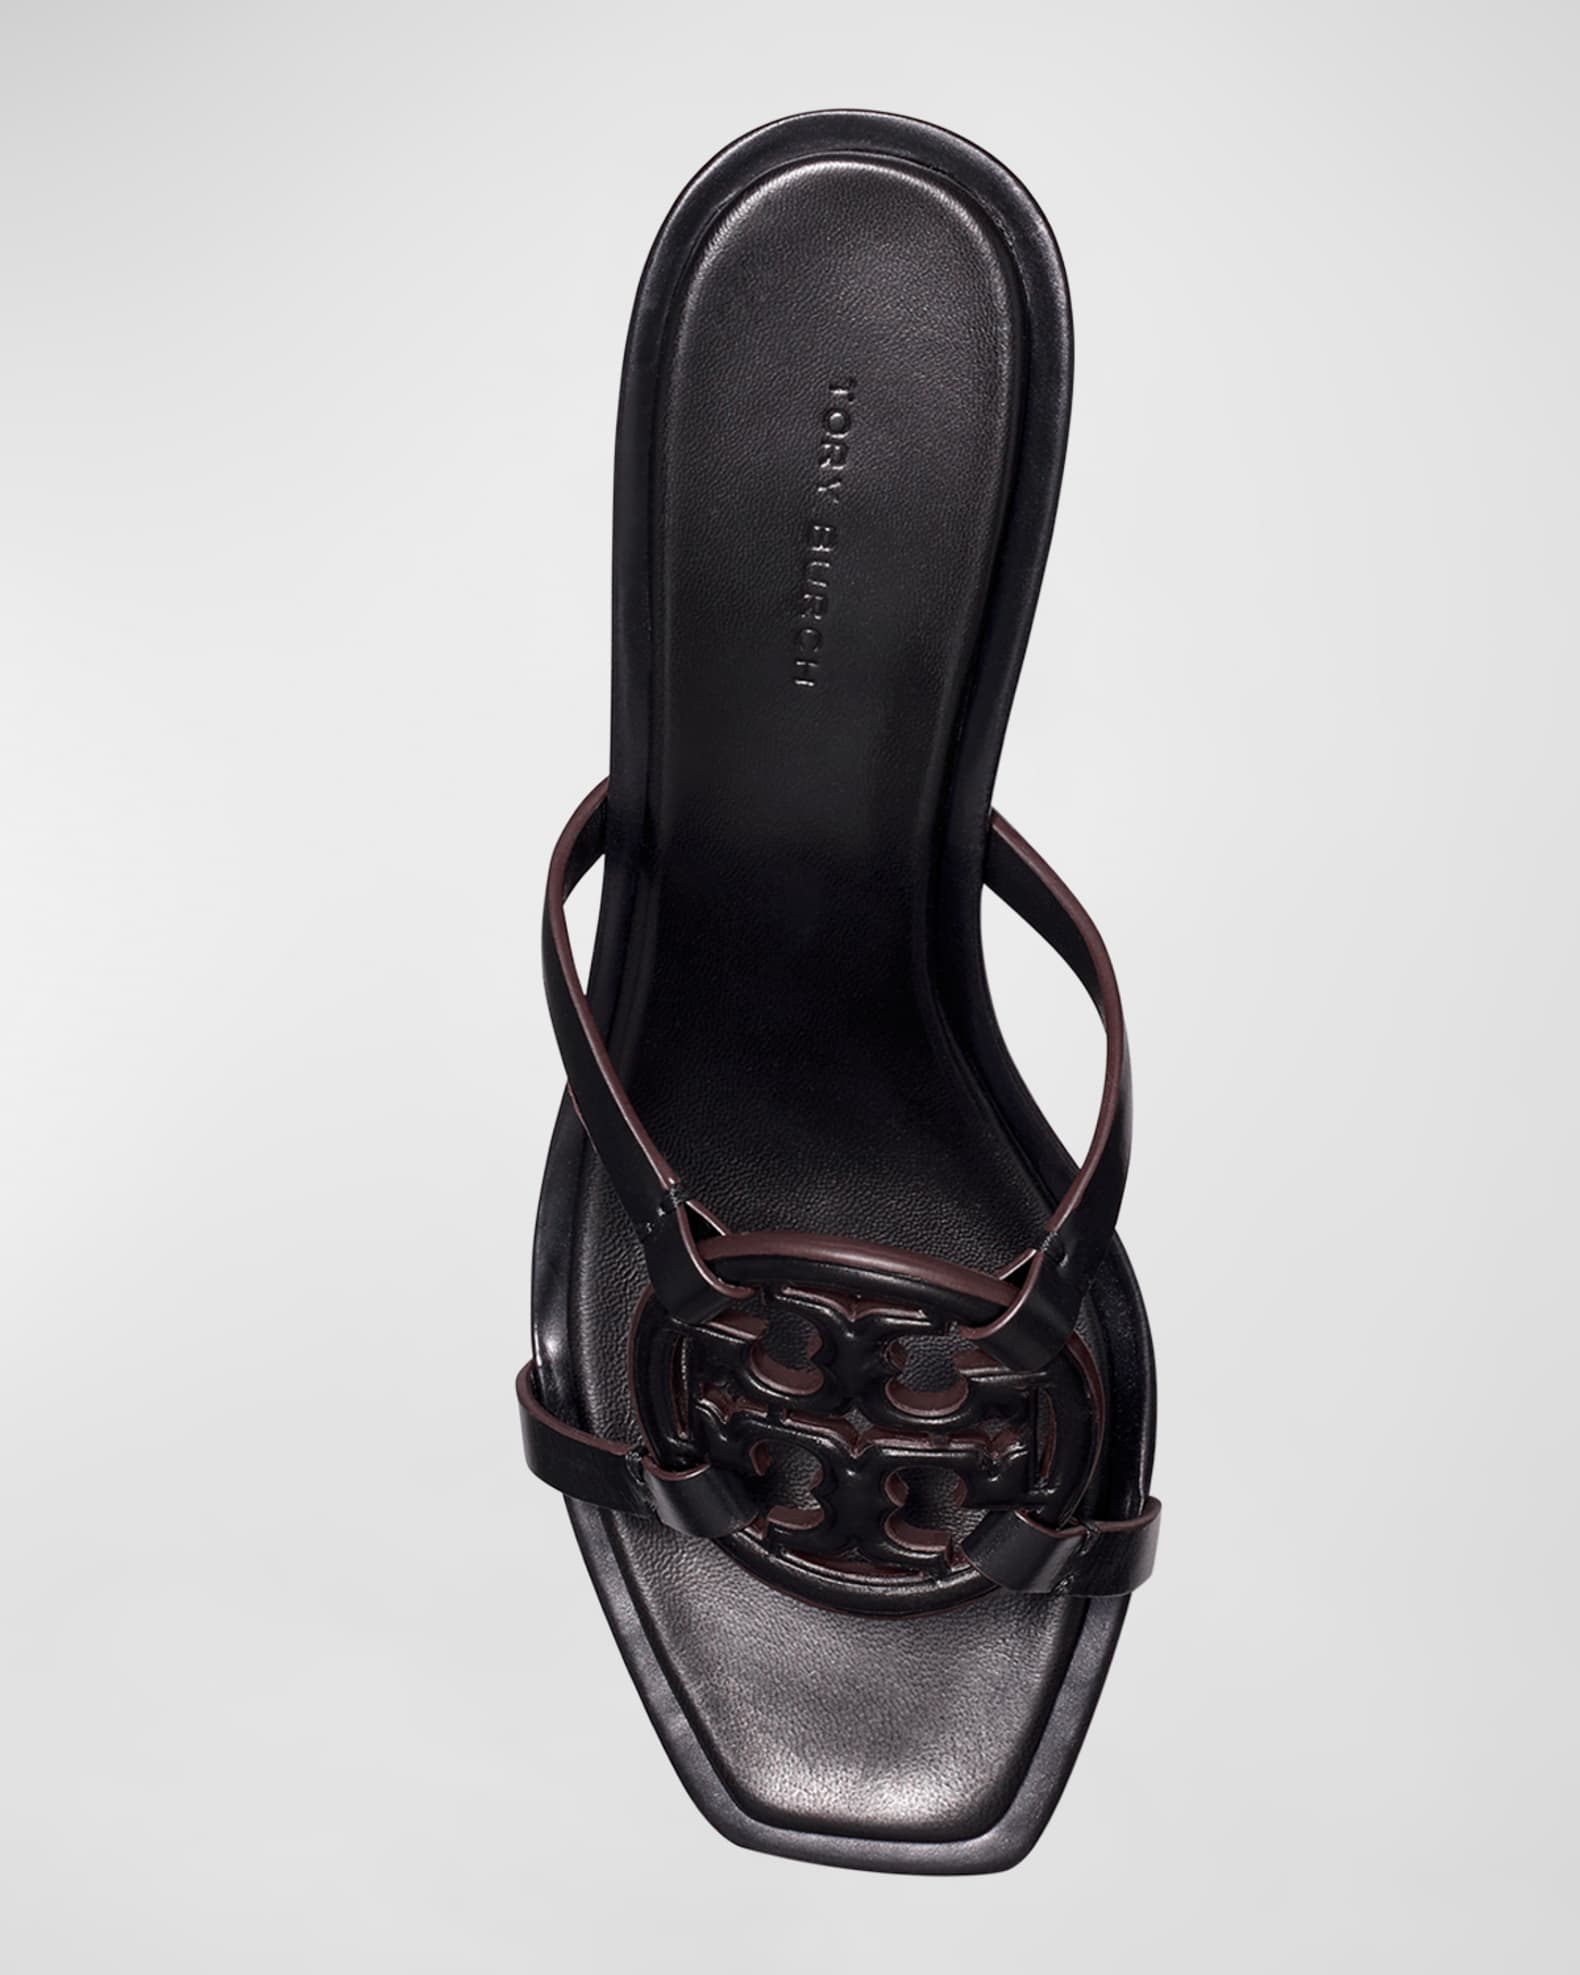 Tory Burch Miller Leather Kitten Heel Sandals | Neiman Marcus